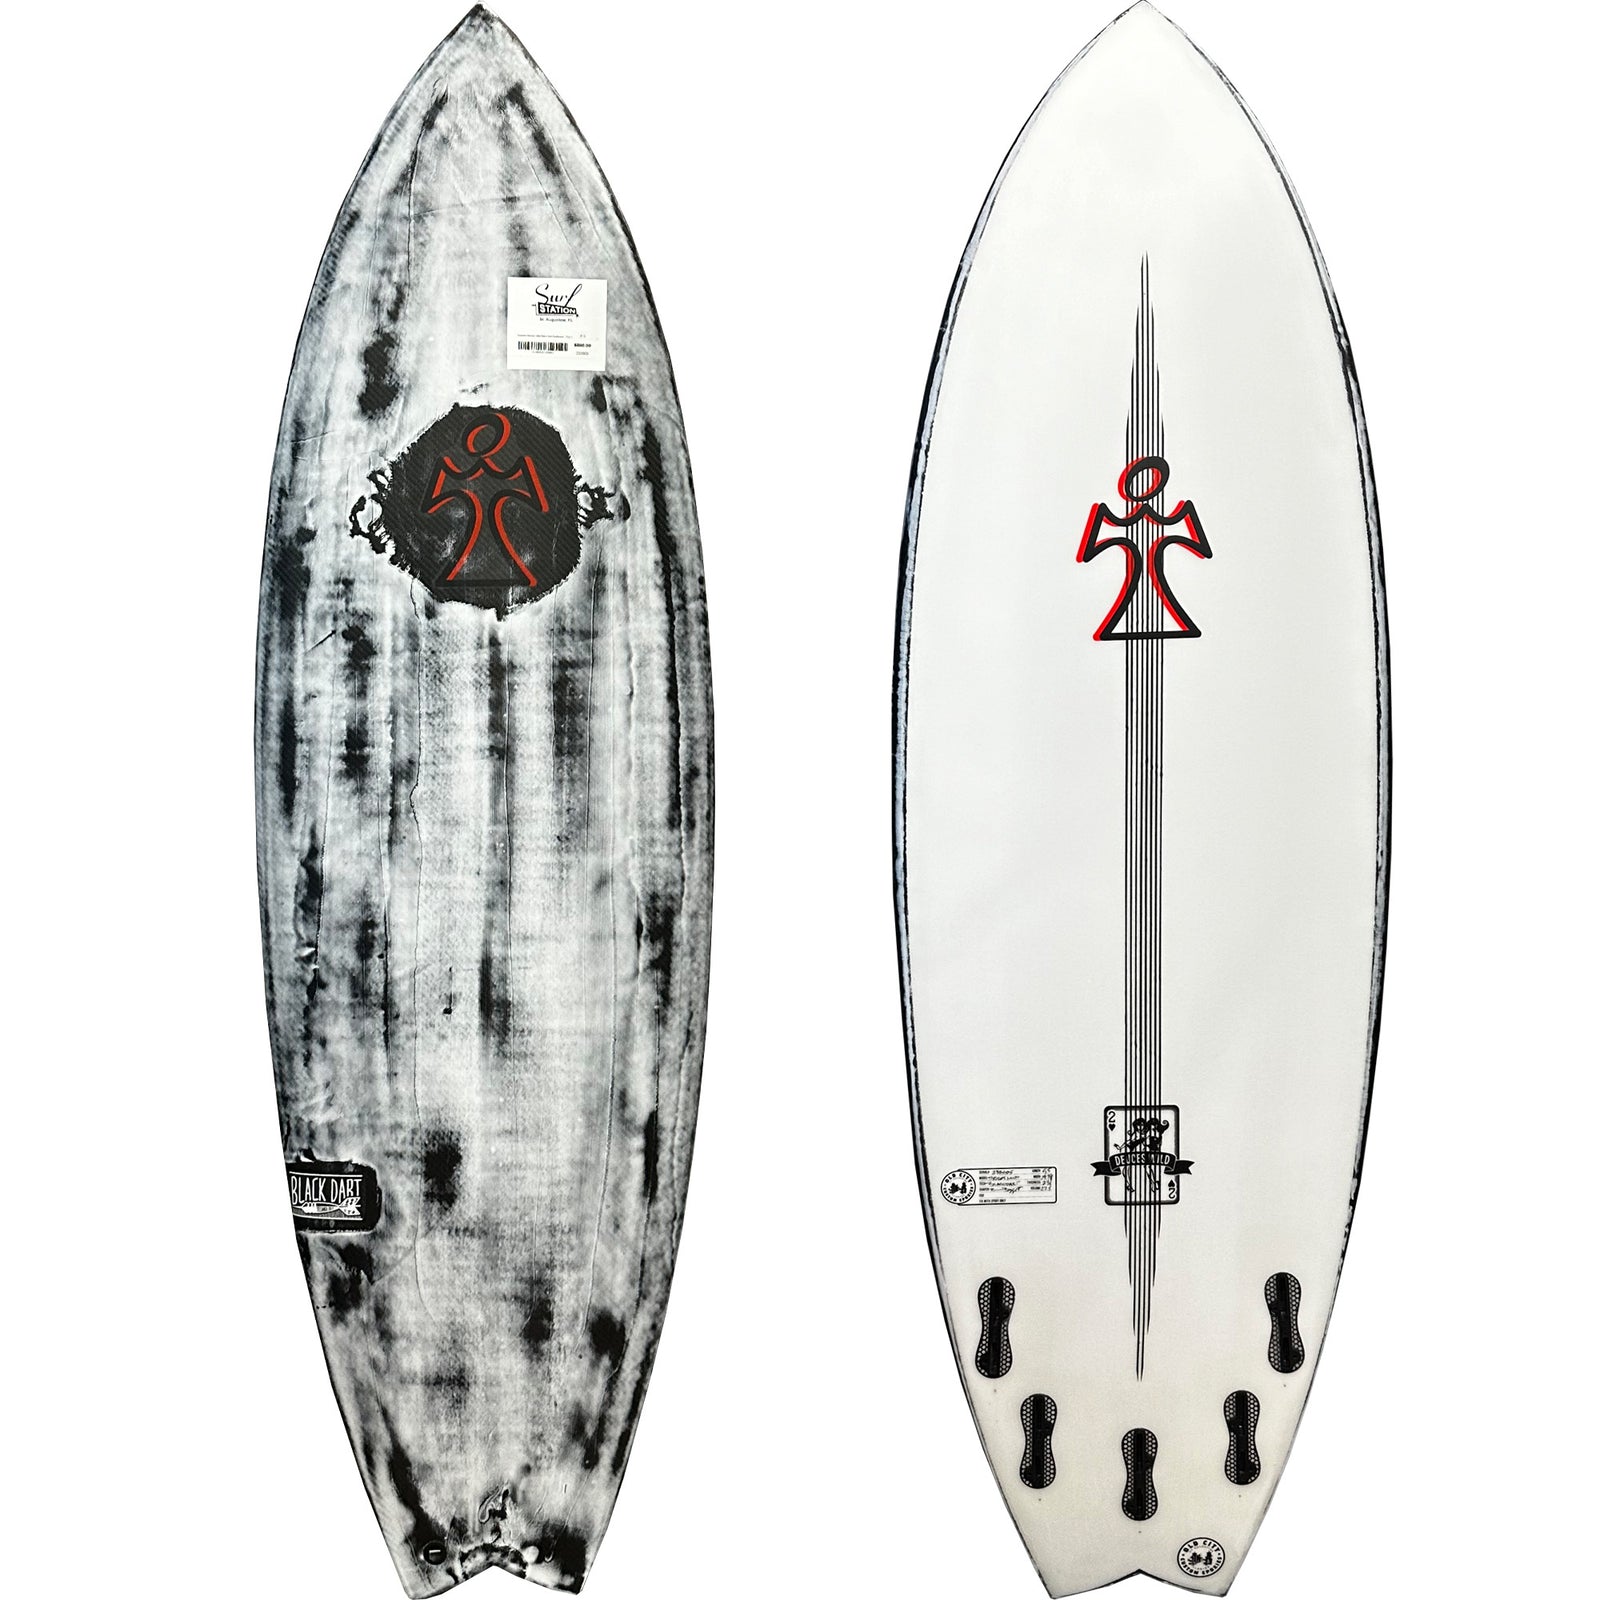 NEW特価サーフボード INSPIRE Surfboards Daikai Shaped インスパイア 5’7” 1/2 x18 3/4 x 2 1/4 約27L トライフィン 5.8フィート未満